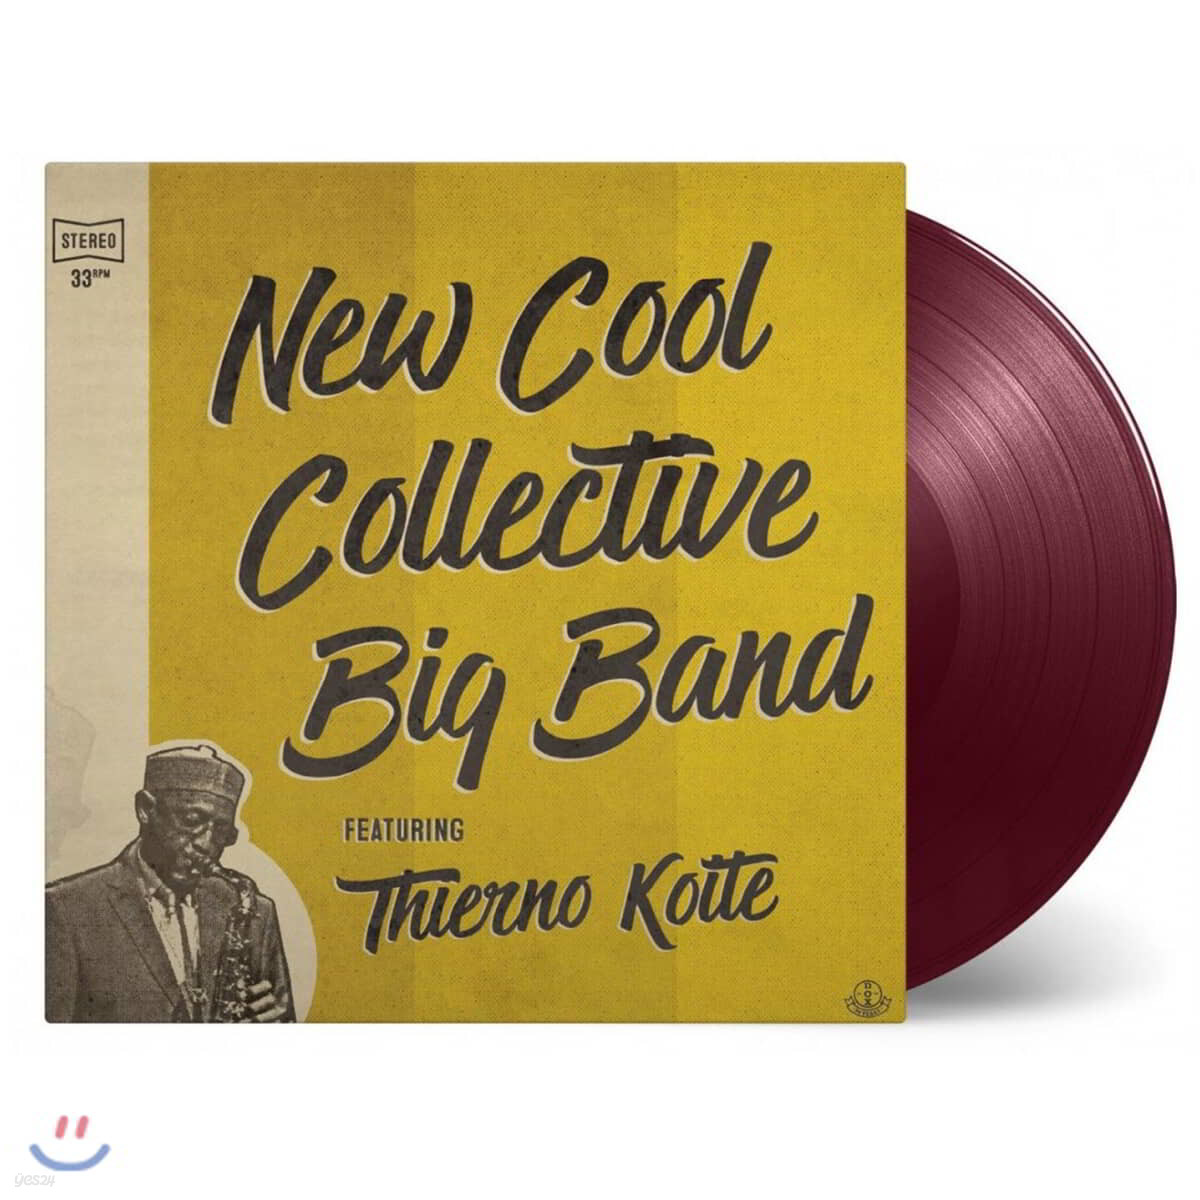 New Cool Collective Big Band featuring Thierno Koite (뉴 쿨 콜렉티브 빅 밴드 & 티에르노 코이테) [퍼플 & 레드 컬러 LP]